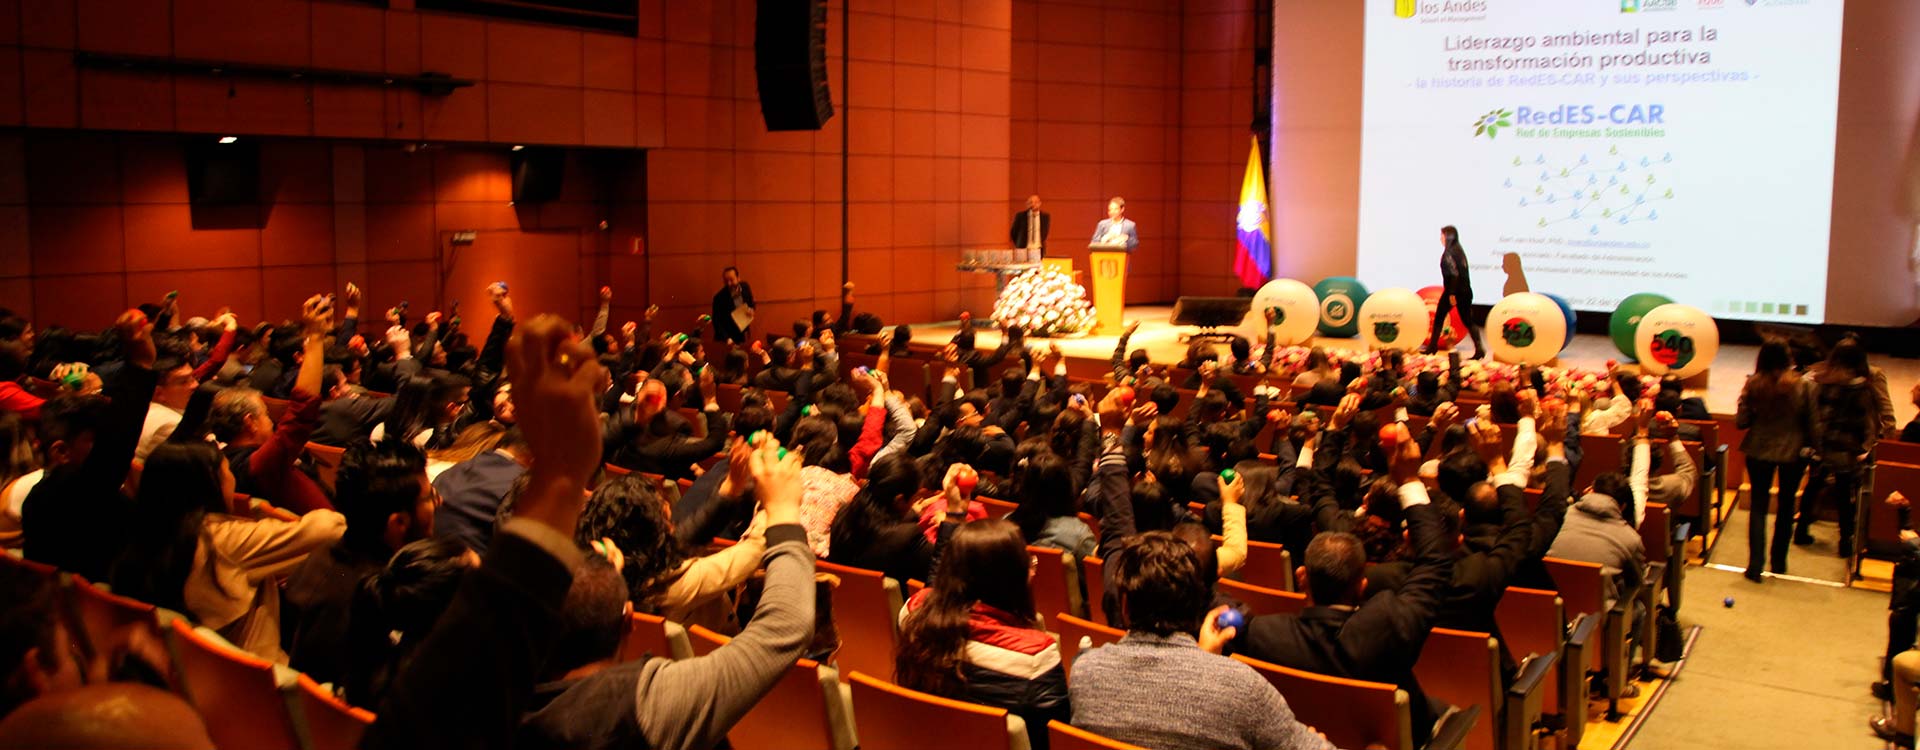 Imagen contiene: grupo de asistentes de 540 empresas reconocidas al interior de un auditorio